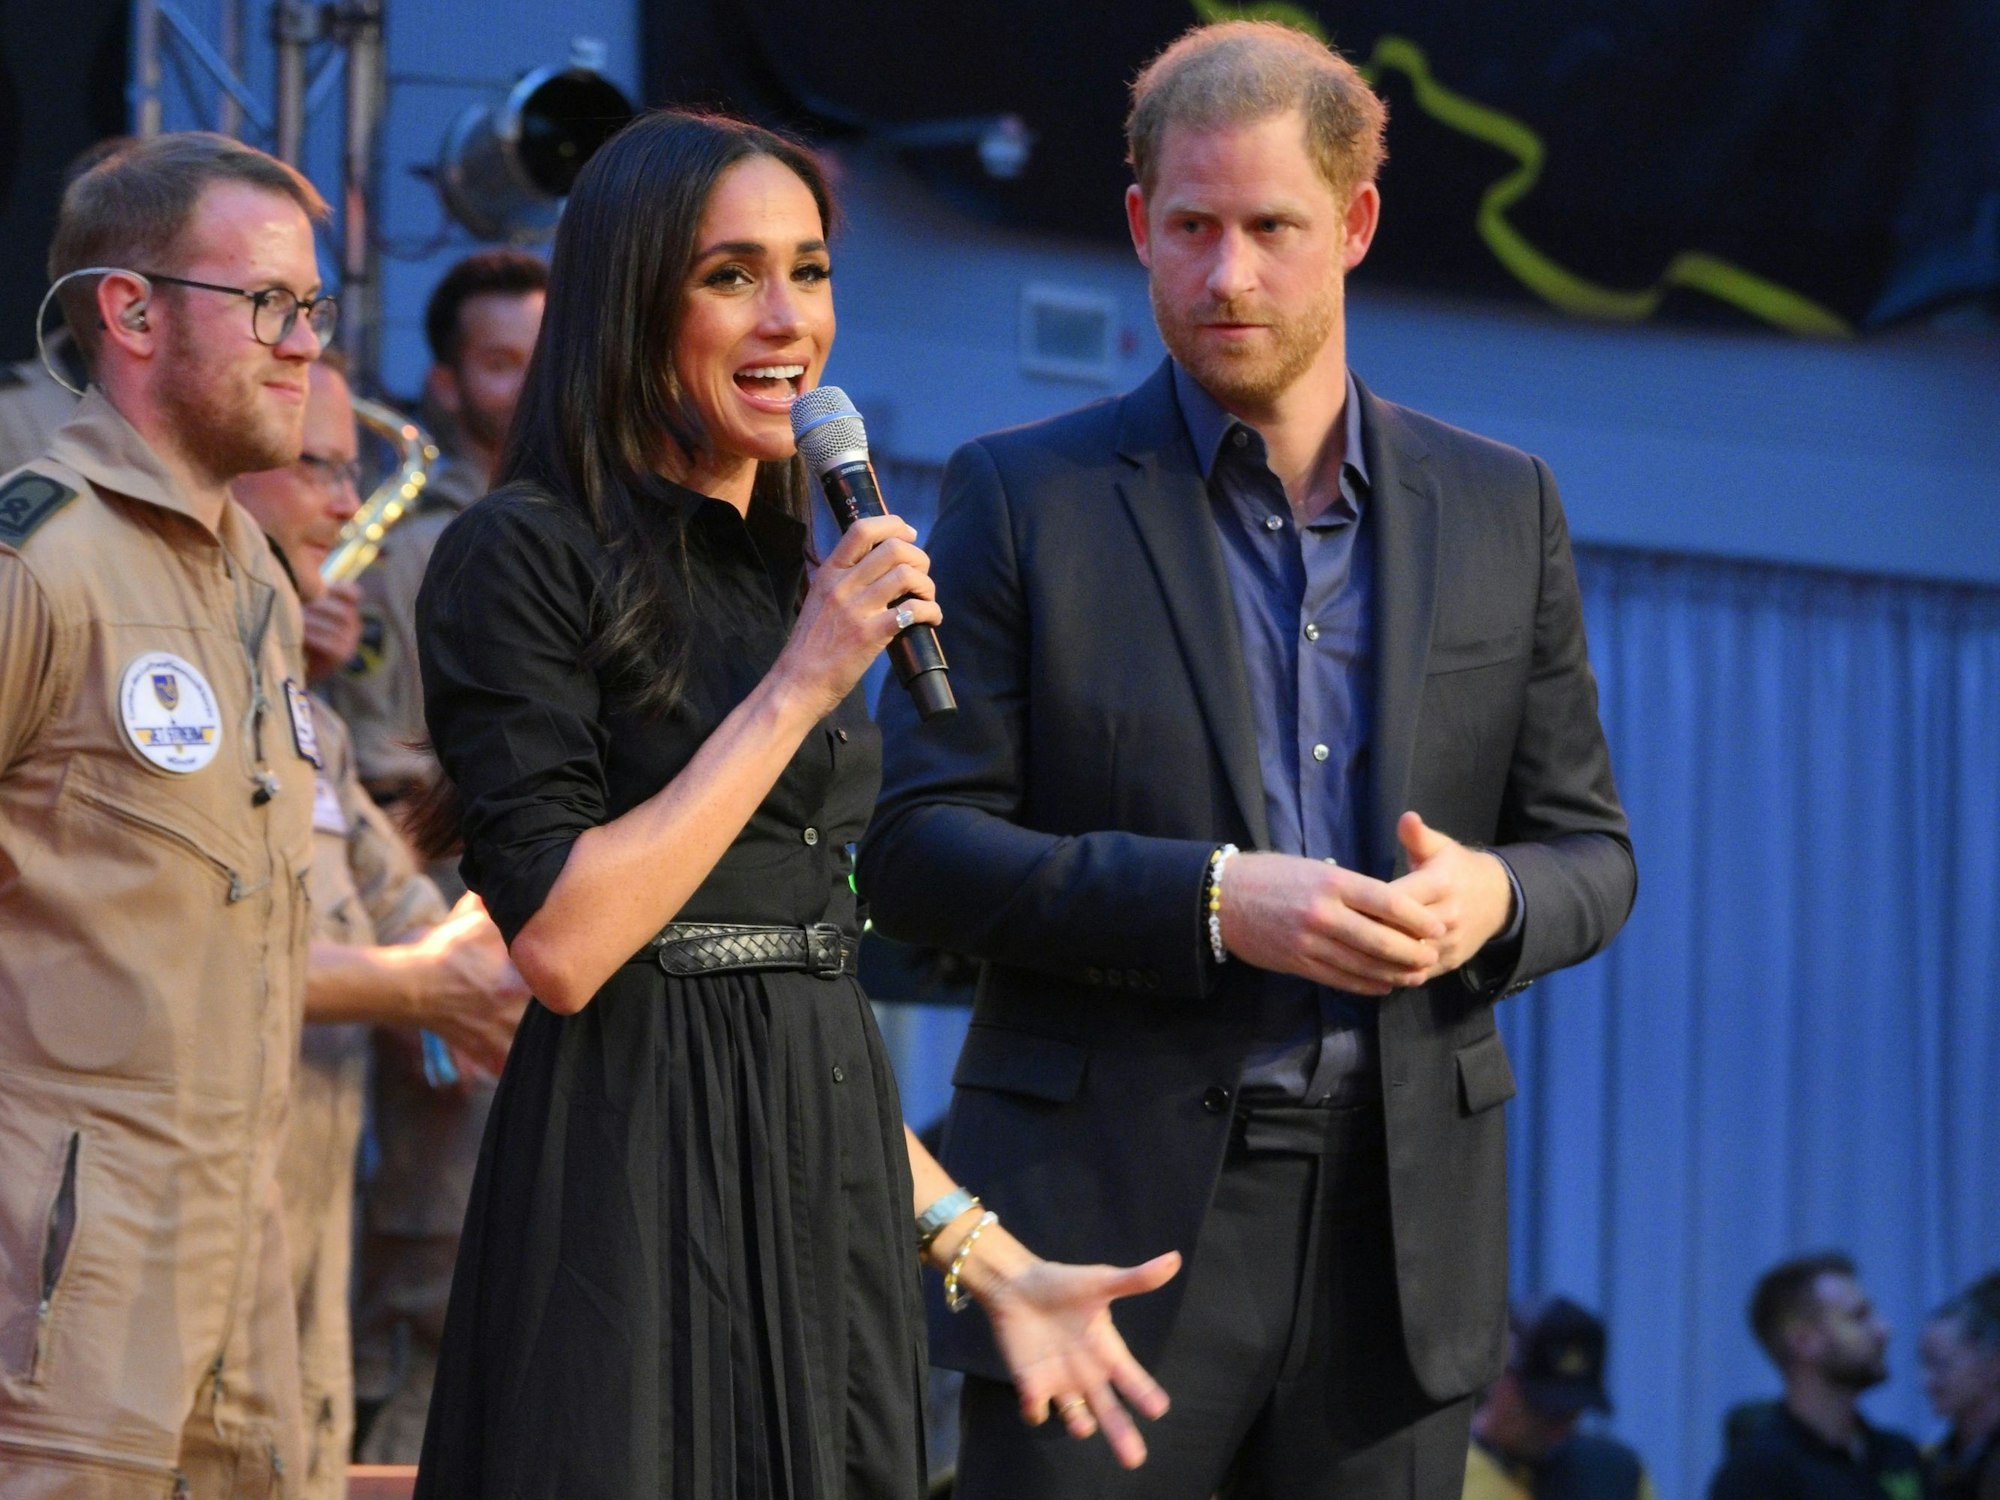 Prinz Harry von Großbritannien und seine Frau, Meghan, Herzogin von Sussex, stehen während der Invictus Games in Düsseldorf auf der Bühne.